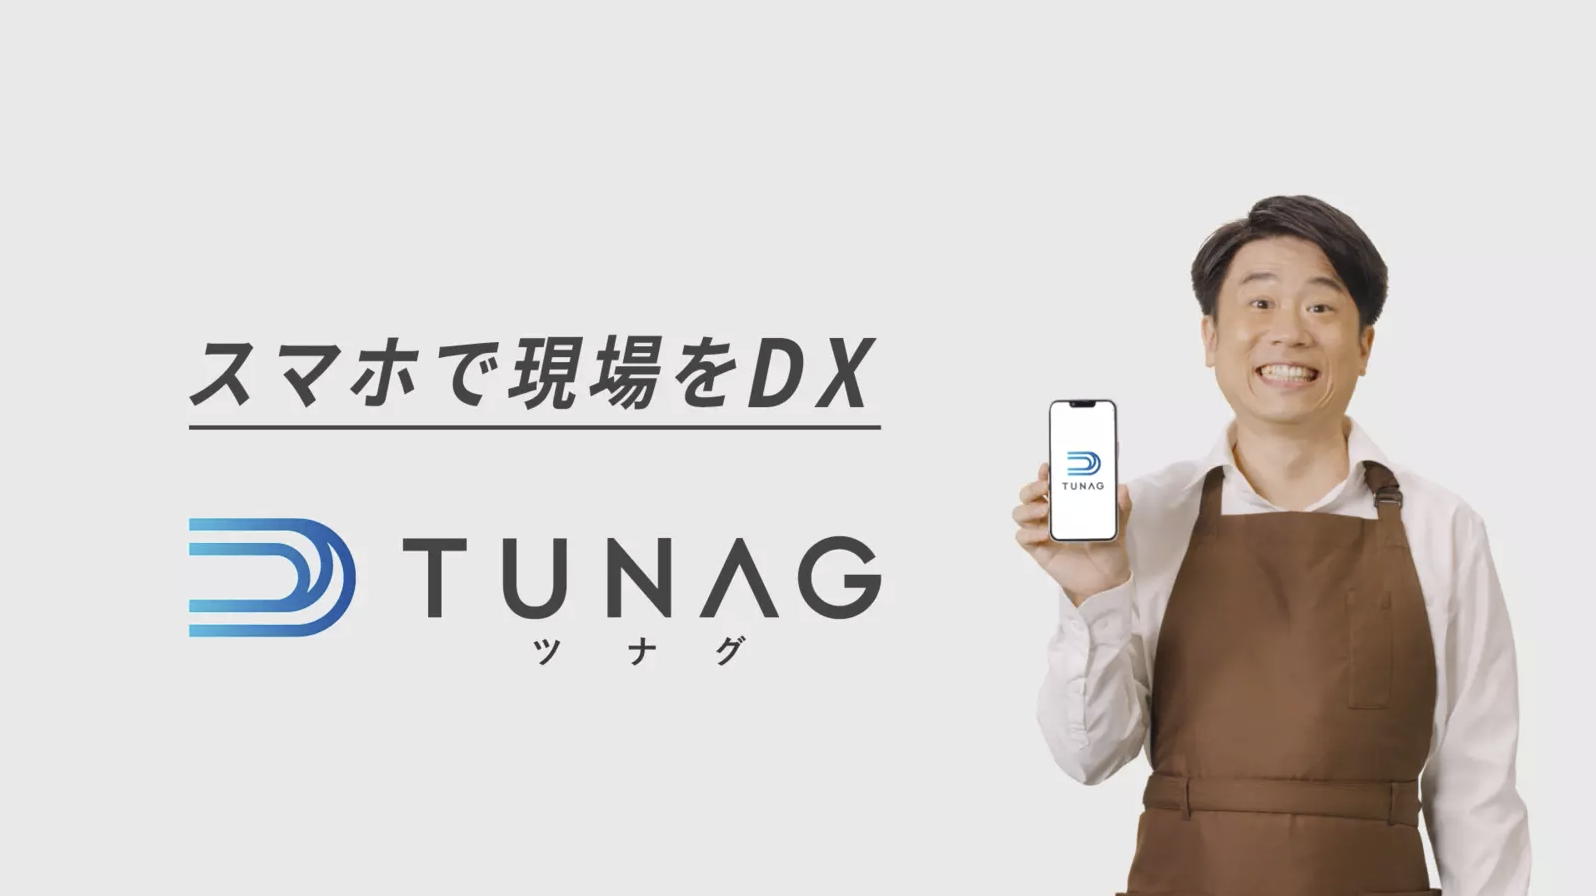 業務DX×エンゲージメント経営支援プラットフォーム『TUNAG』